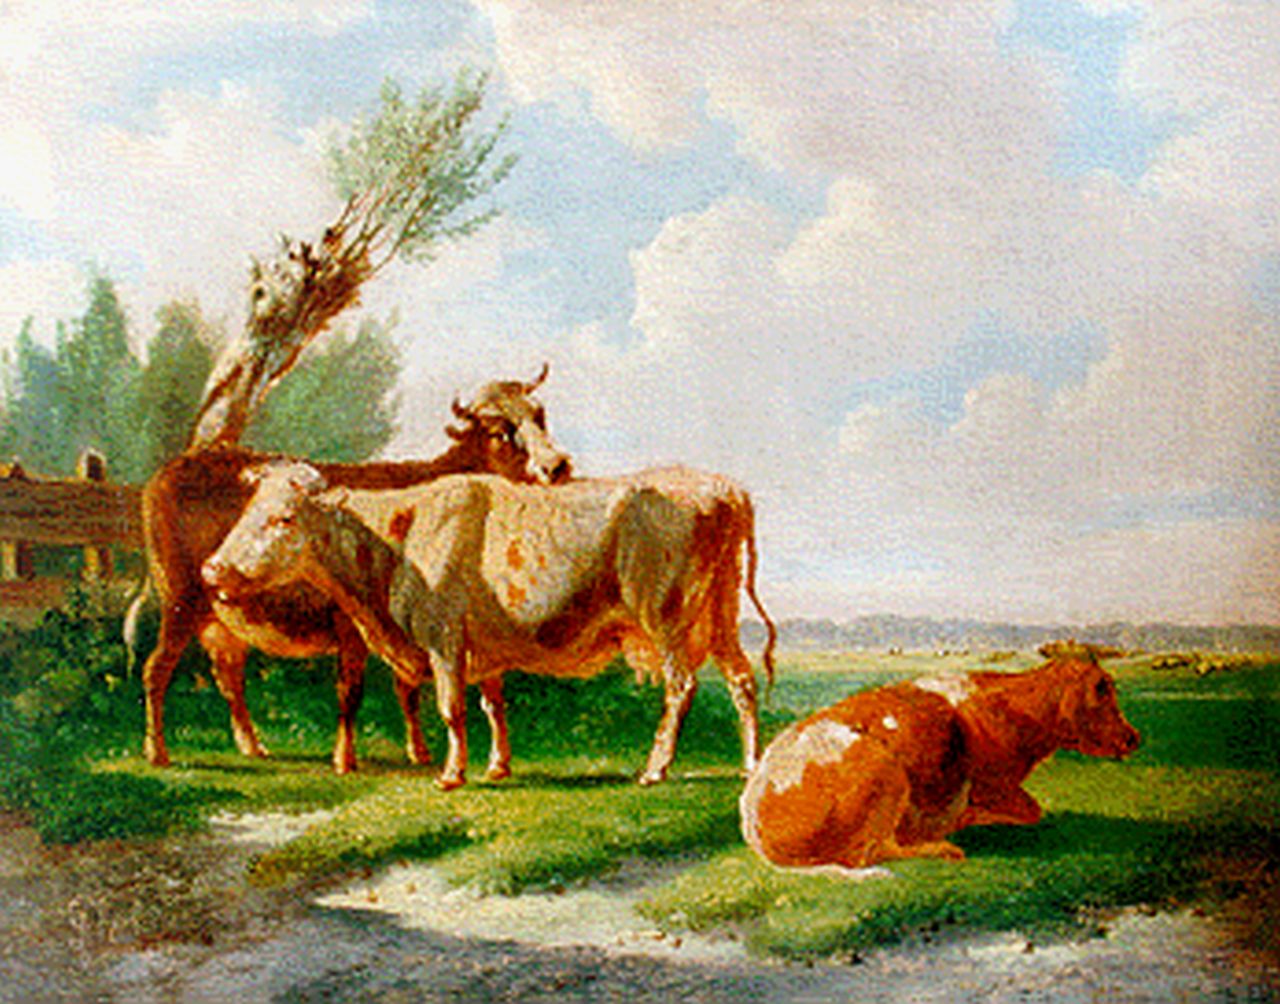 Verhoesen A.  | Albertus Verhoesen, Rustend vee in een weiland, olieverf op paneel 13,0 x 16,7 cm, gesigneerd linksonder en gedateerd 1869